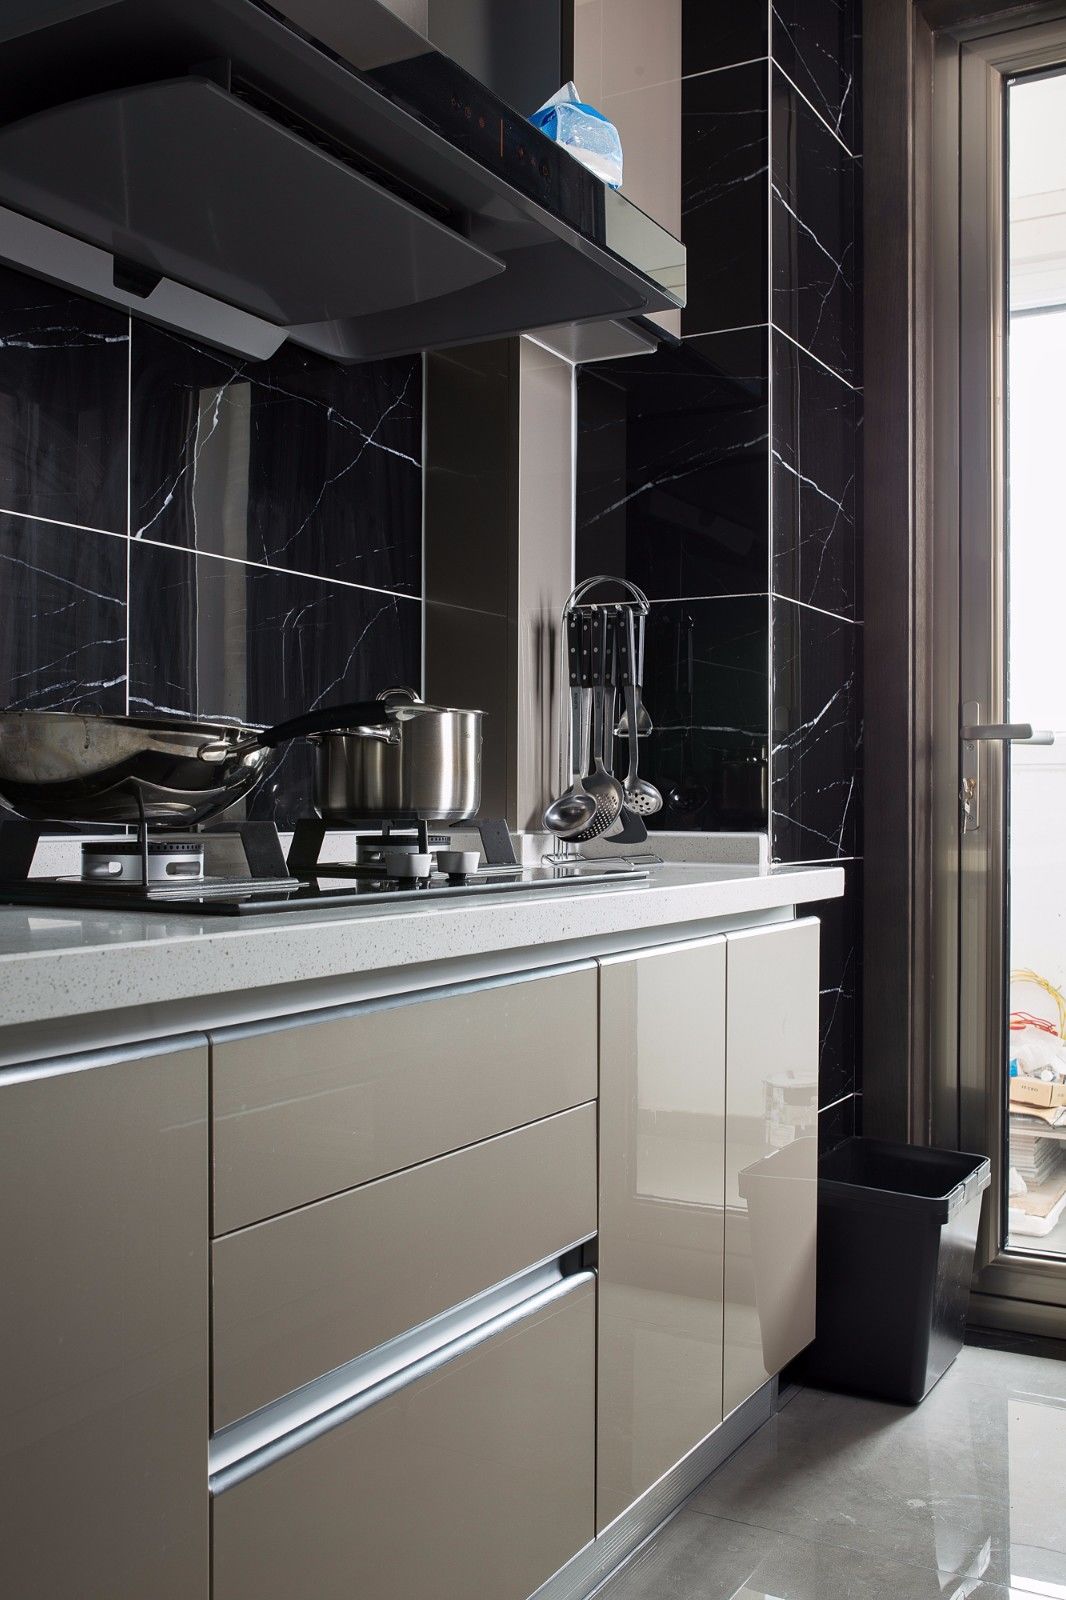 不锈钢橱柜复尺注意事项,让橱柜更贴合你的厨房